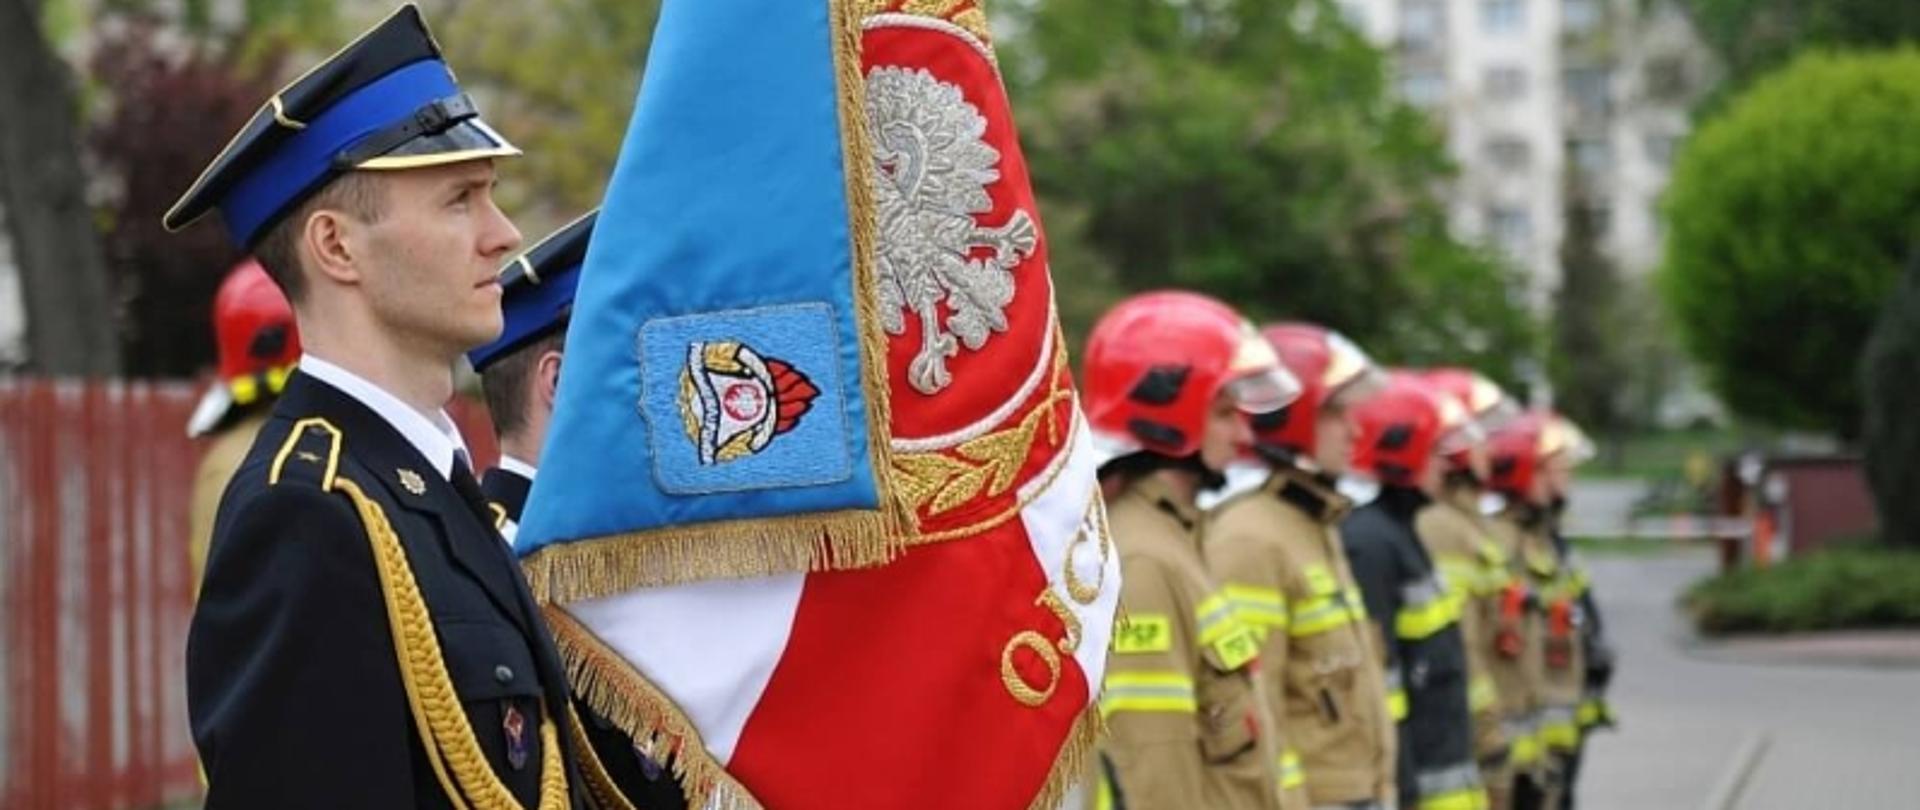 strażacy stojący w szeregu, dwóch pierwszych w umundurowaniu wyjściowym, drugi trzyma sztandar, pozostali w ubraniach bojowych i czerwonych hełmach 